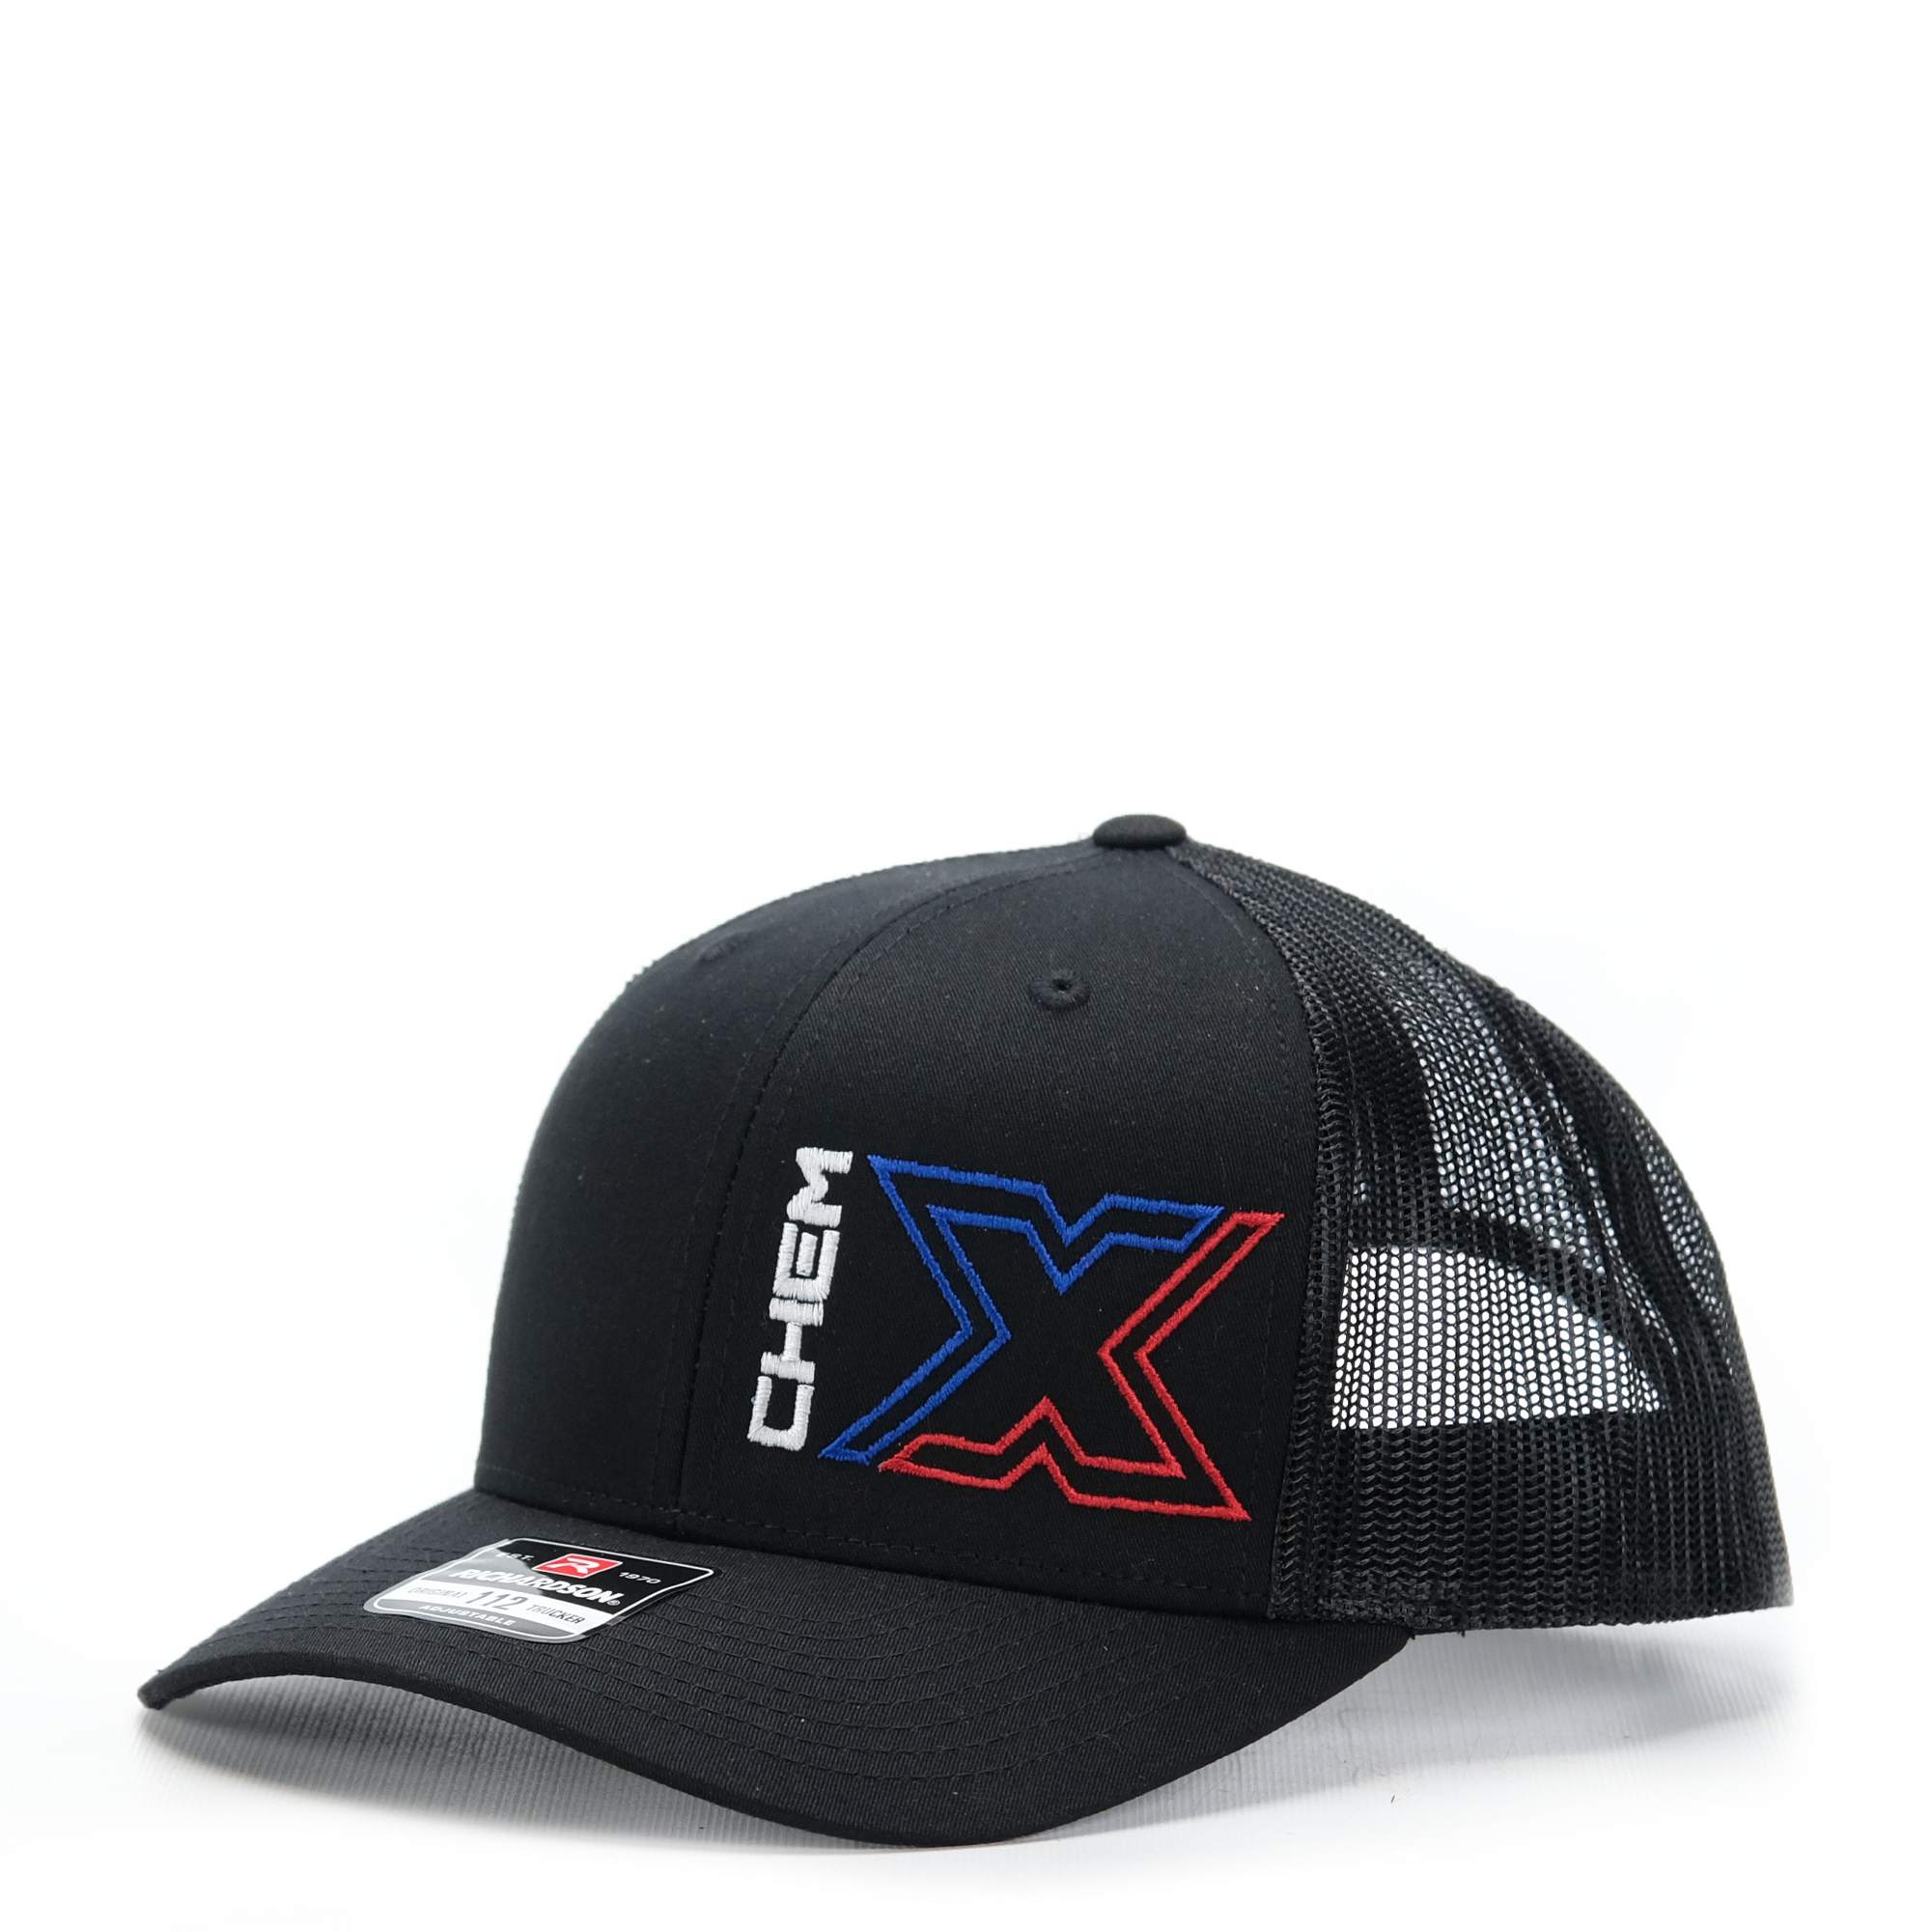 Chem-X Trucker Hat: Richardson 112 Black / Black